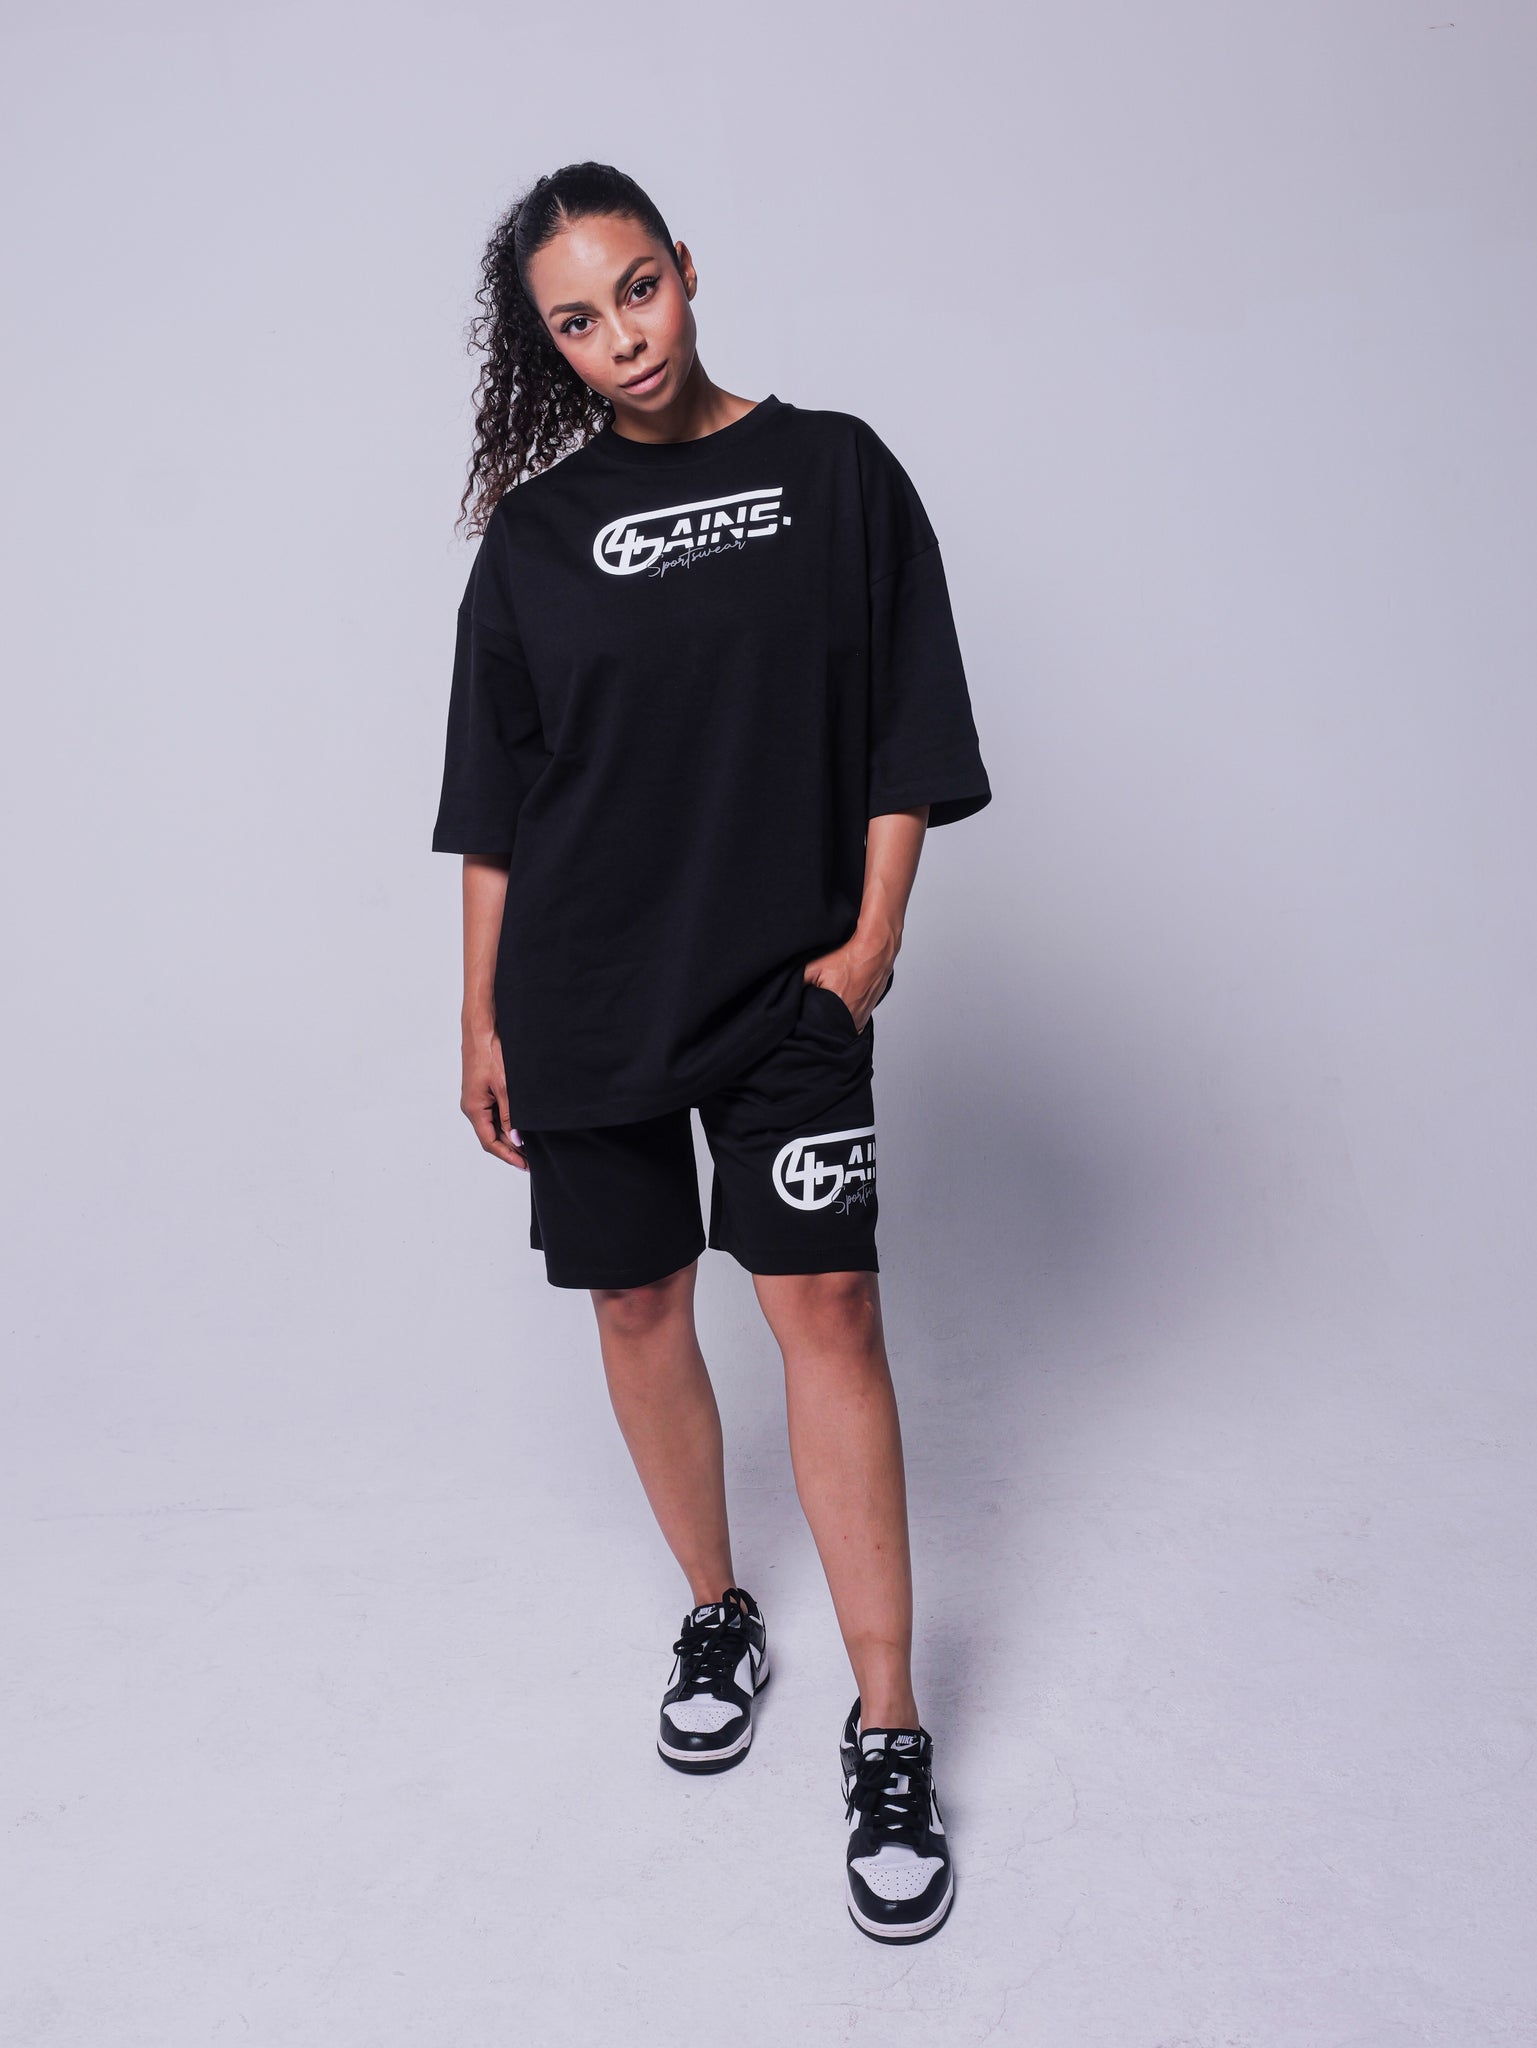 4GAINS Sportswear oversized T-shirt in der Farbe schwarz mit weißem Aufdruck an einem weiblichem Model stehend